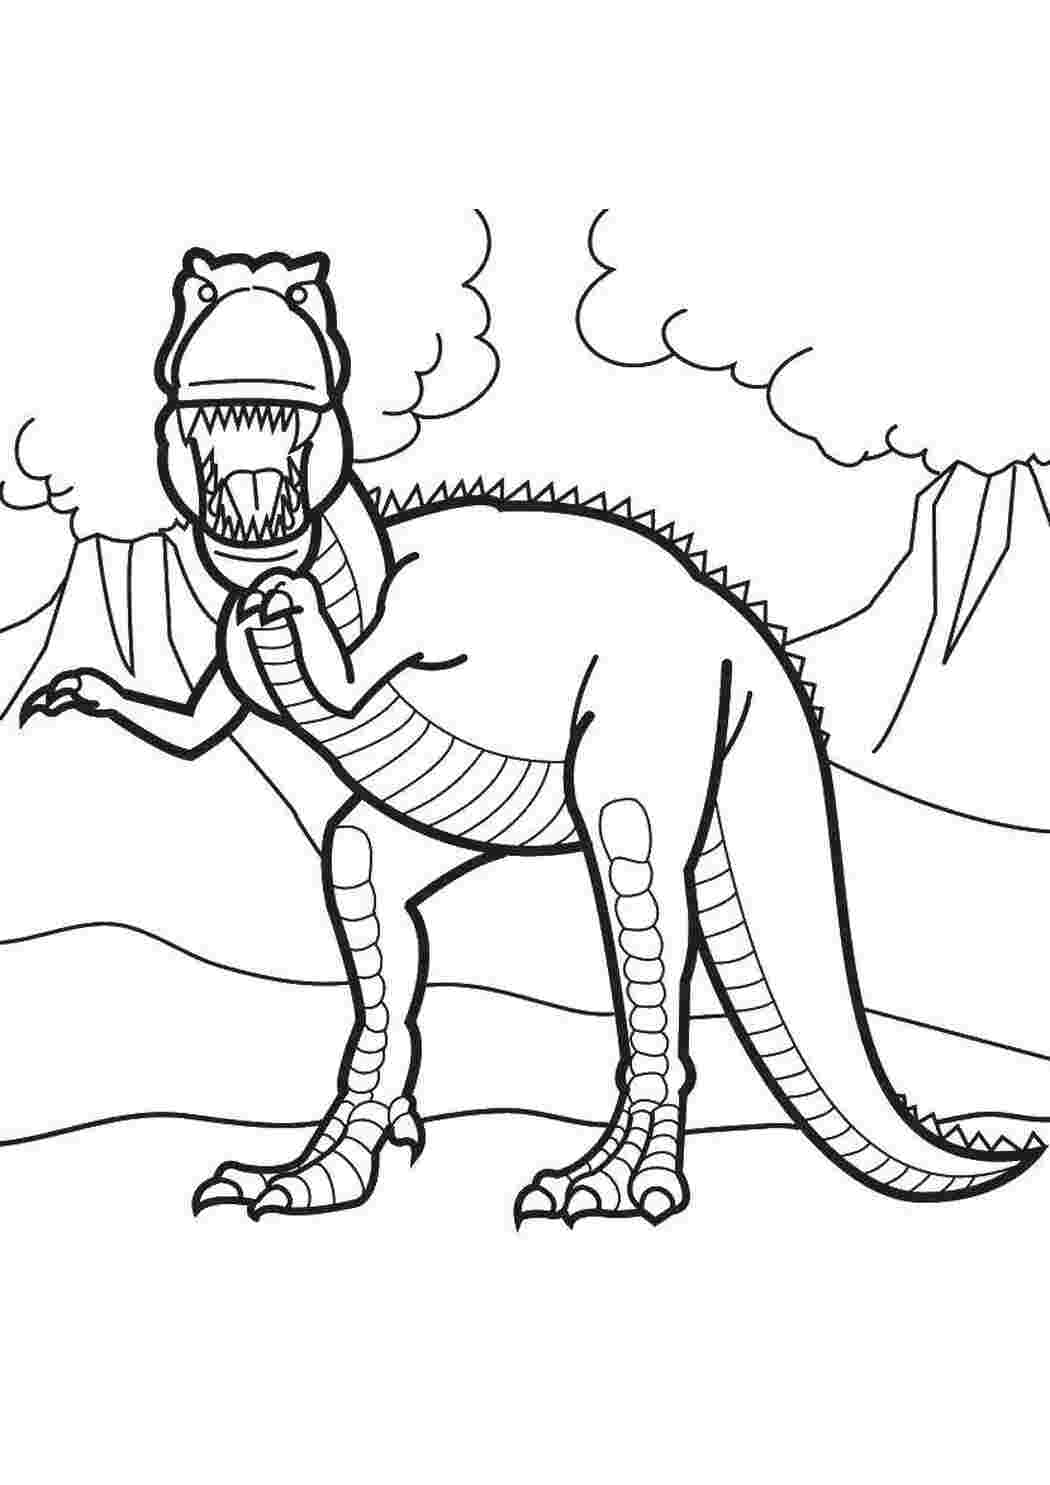 Раскраска динозавр формат а4. Дино рекс раскраска. Терекс динозавры раскраска. Динозавр раскраска для детей. Шонизавр раскраска.